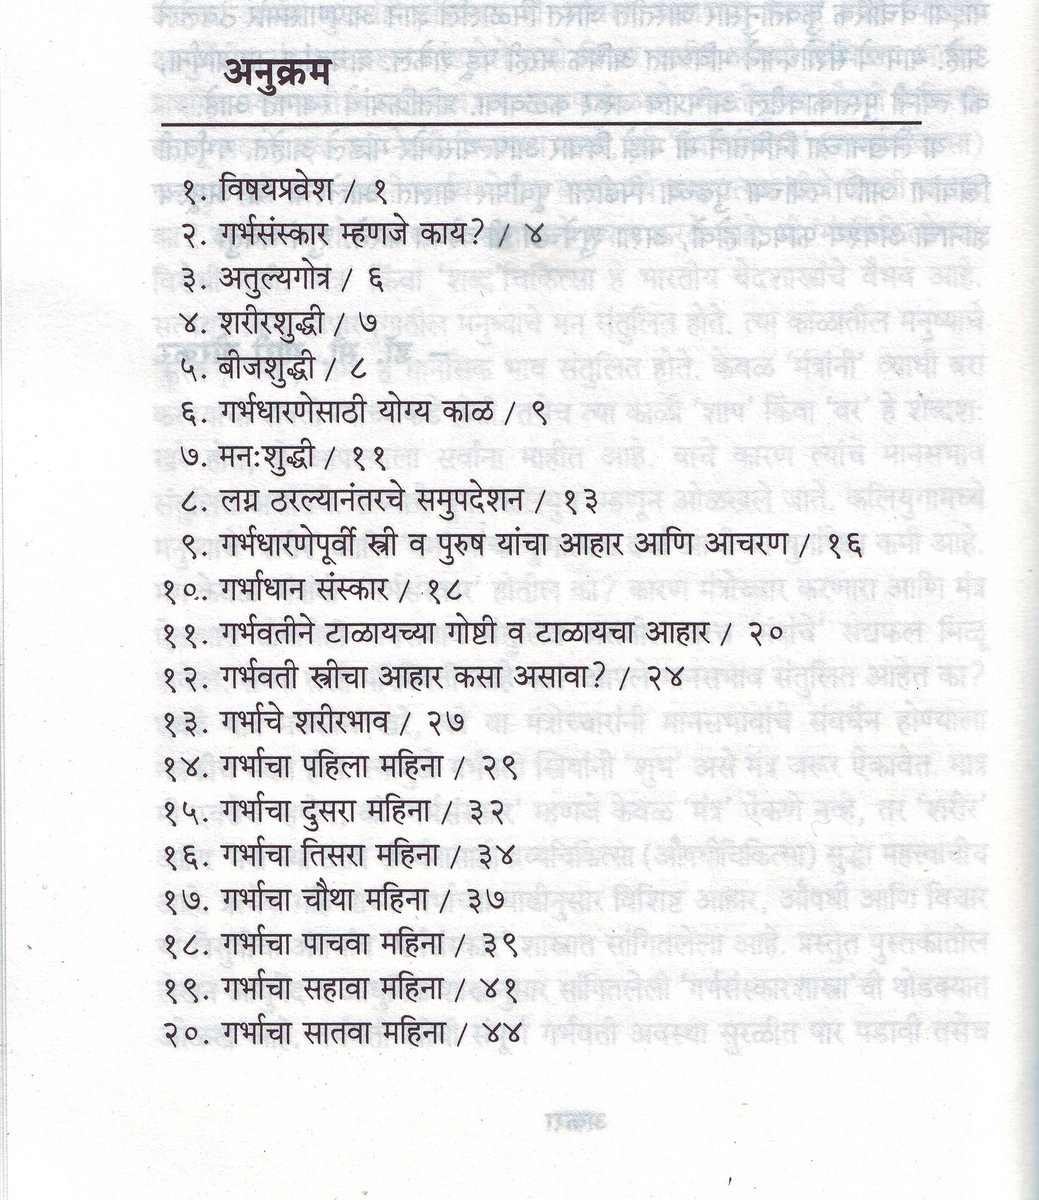 Garbh sanskar by balaji tambe in english pdf